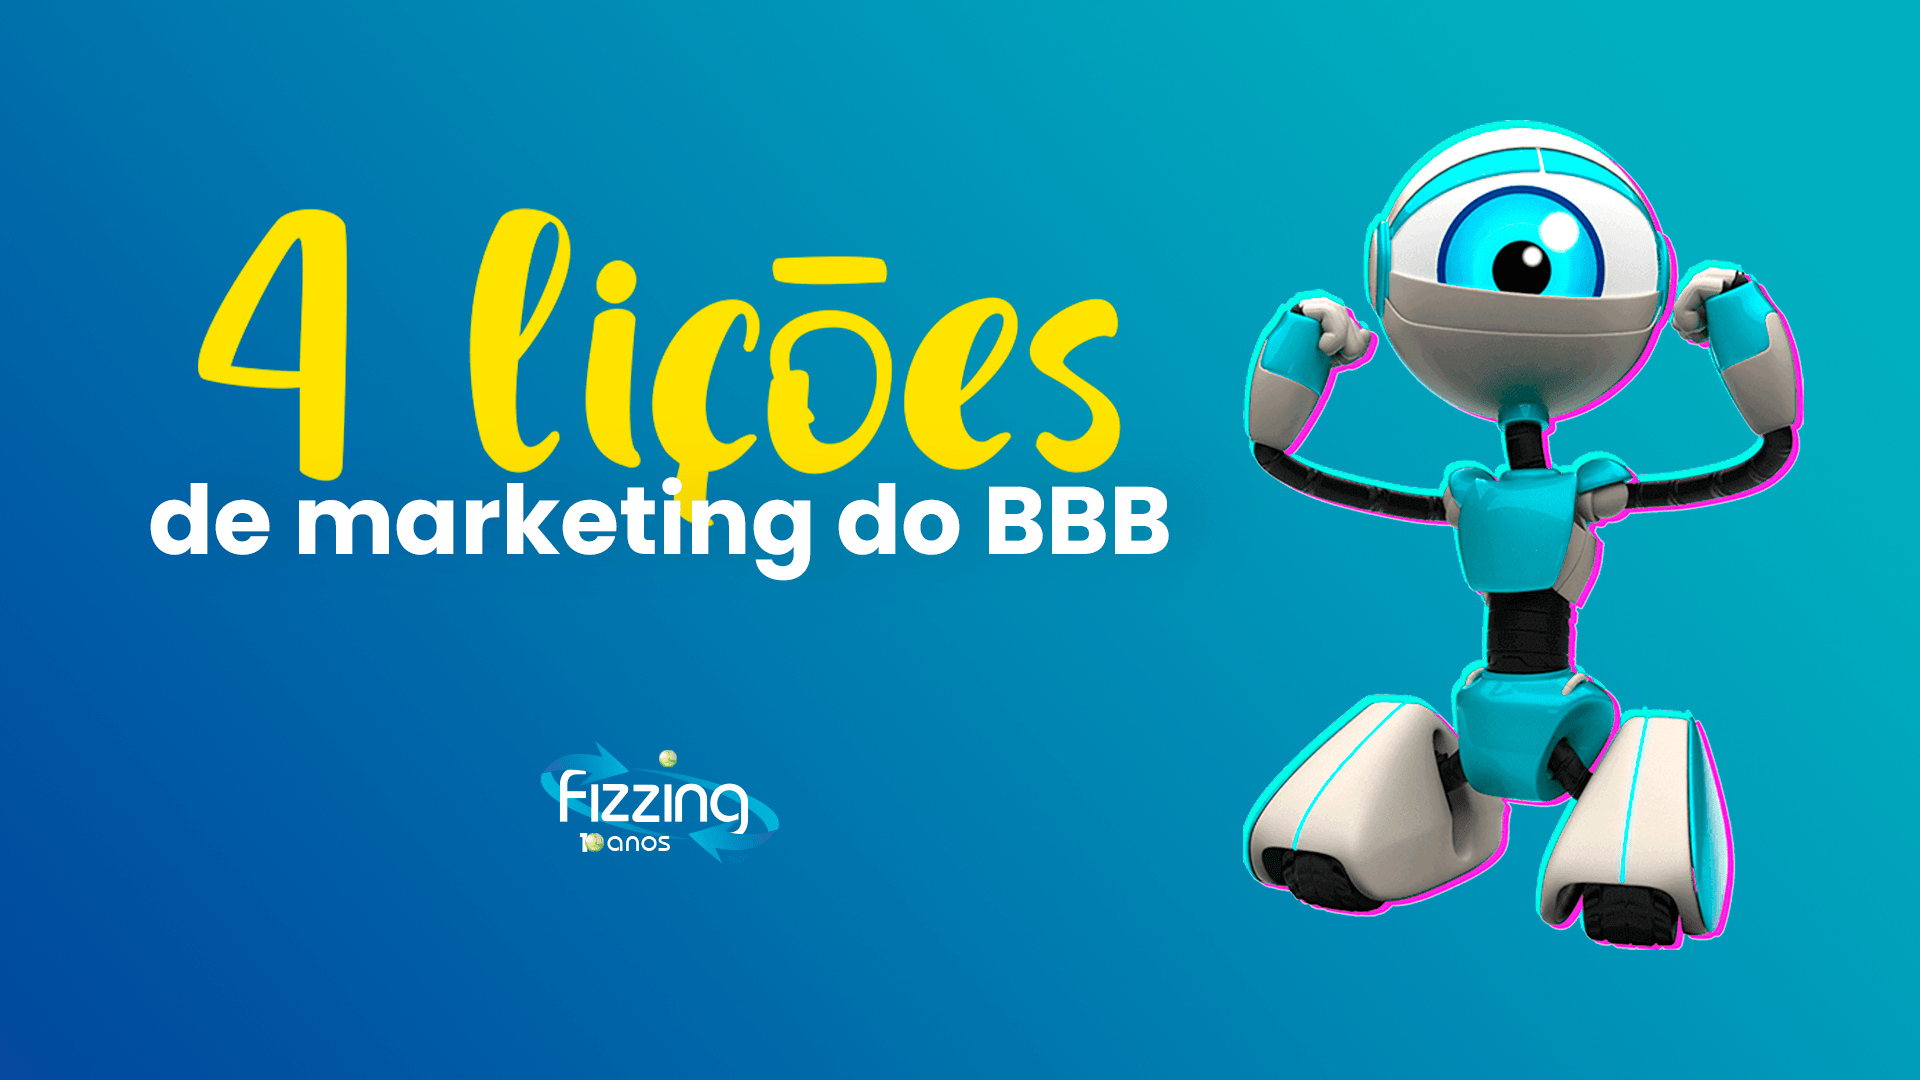 Robozinho do bbb em um fundo azul, com o texto "4 lições de marketing do BBB"